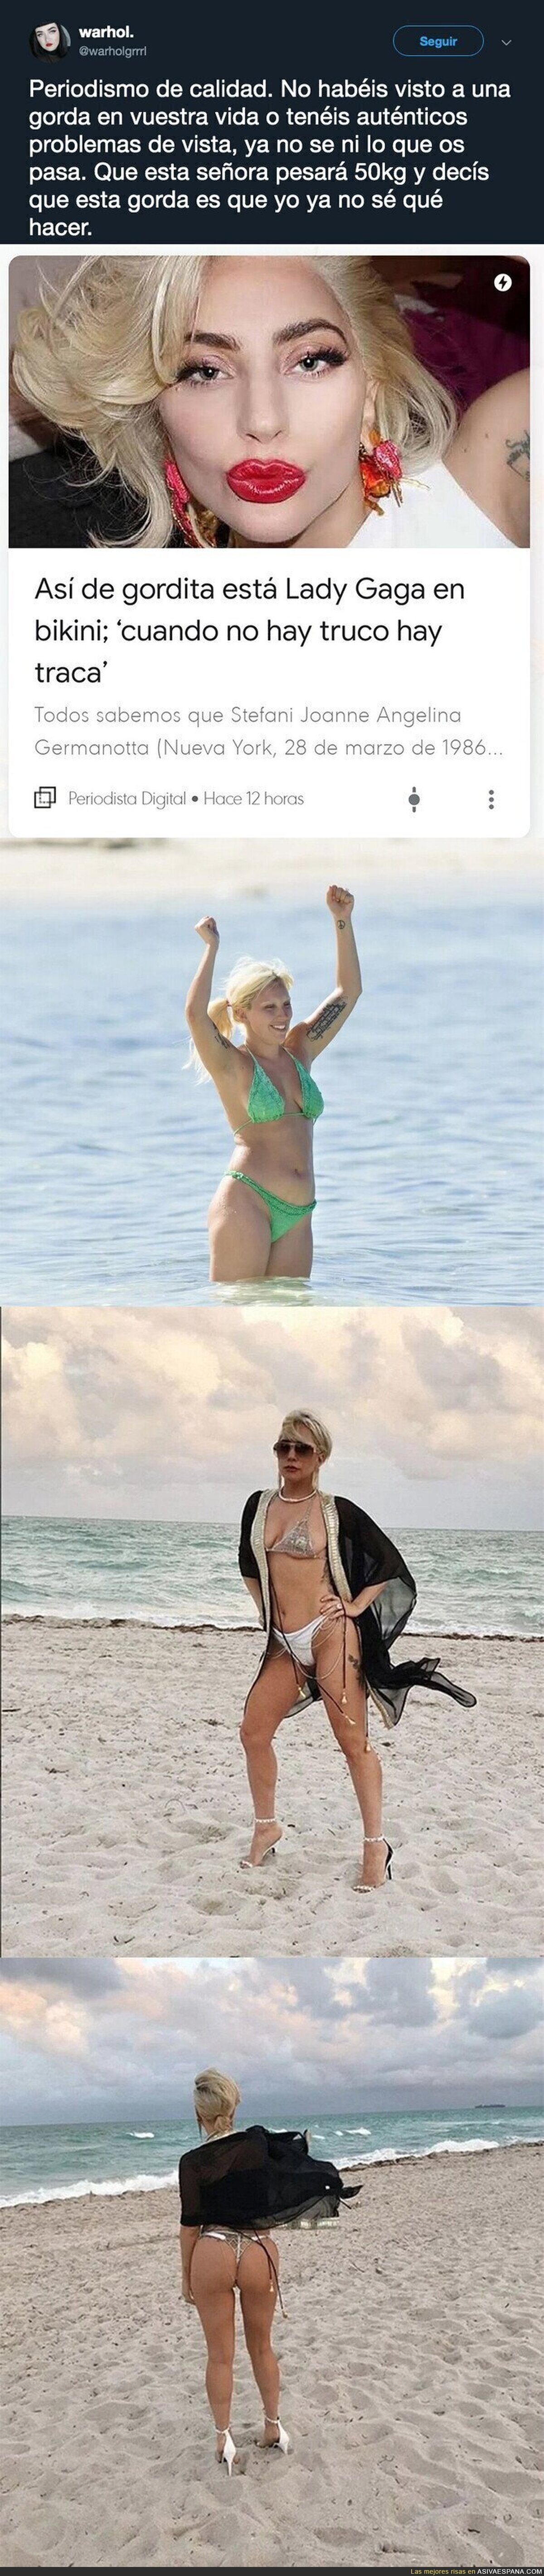 Fuertes críticas a 'Periodista Digital' por llamar 'gordita' a Lady Gaga en estas fotos en bikini